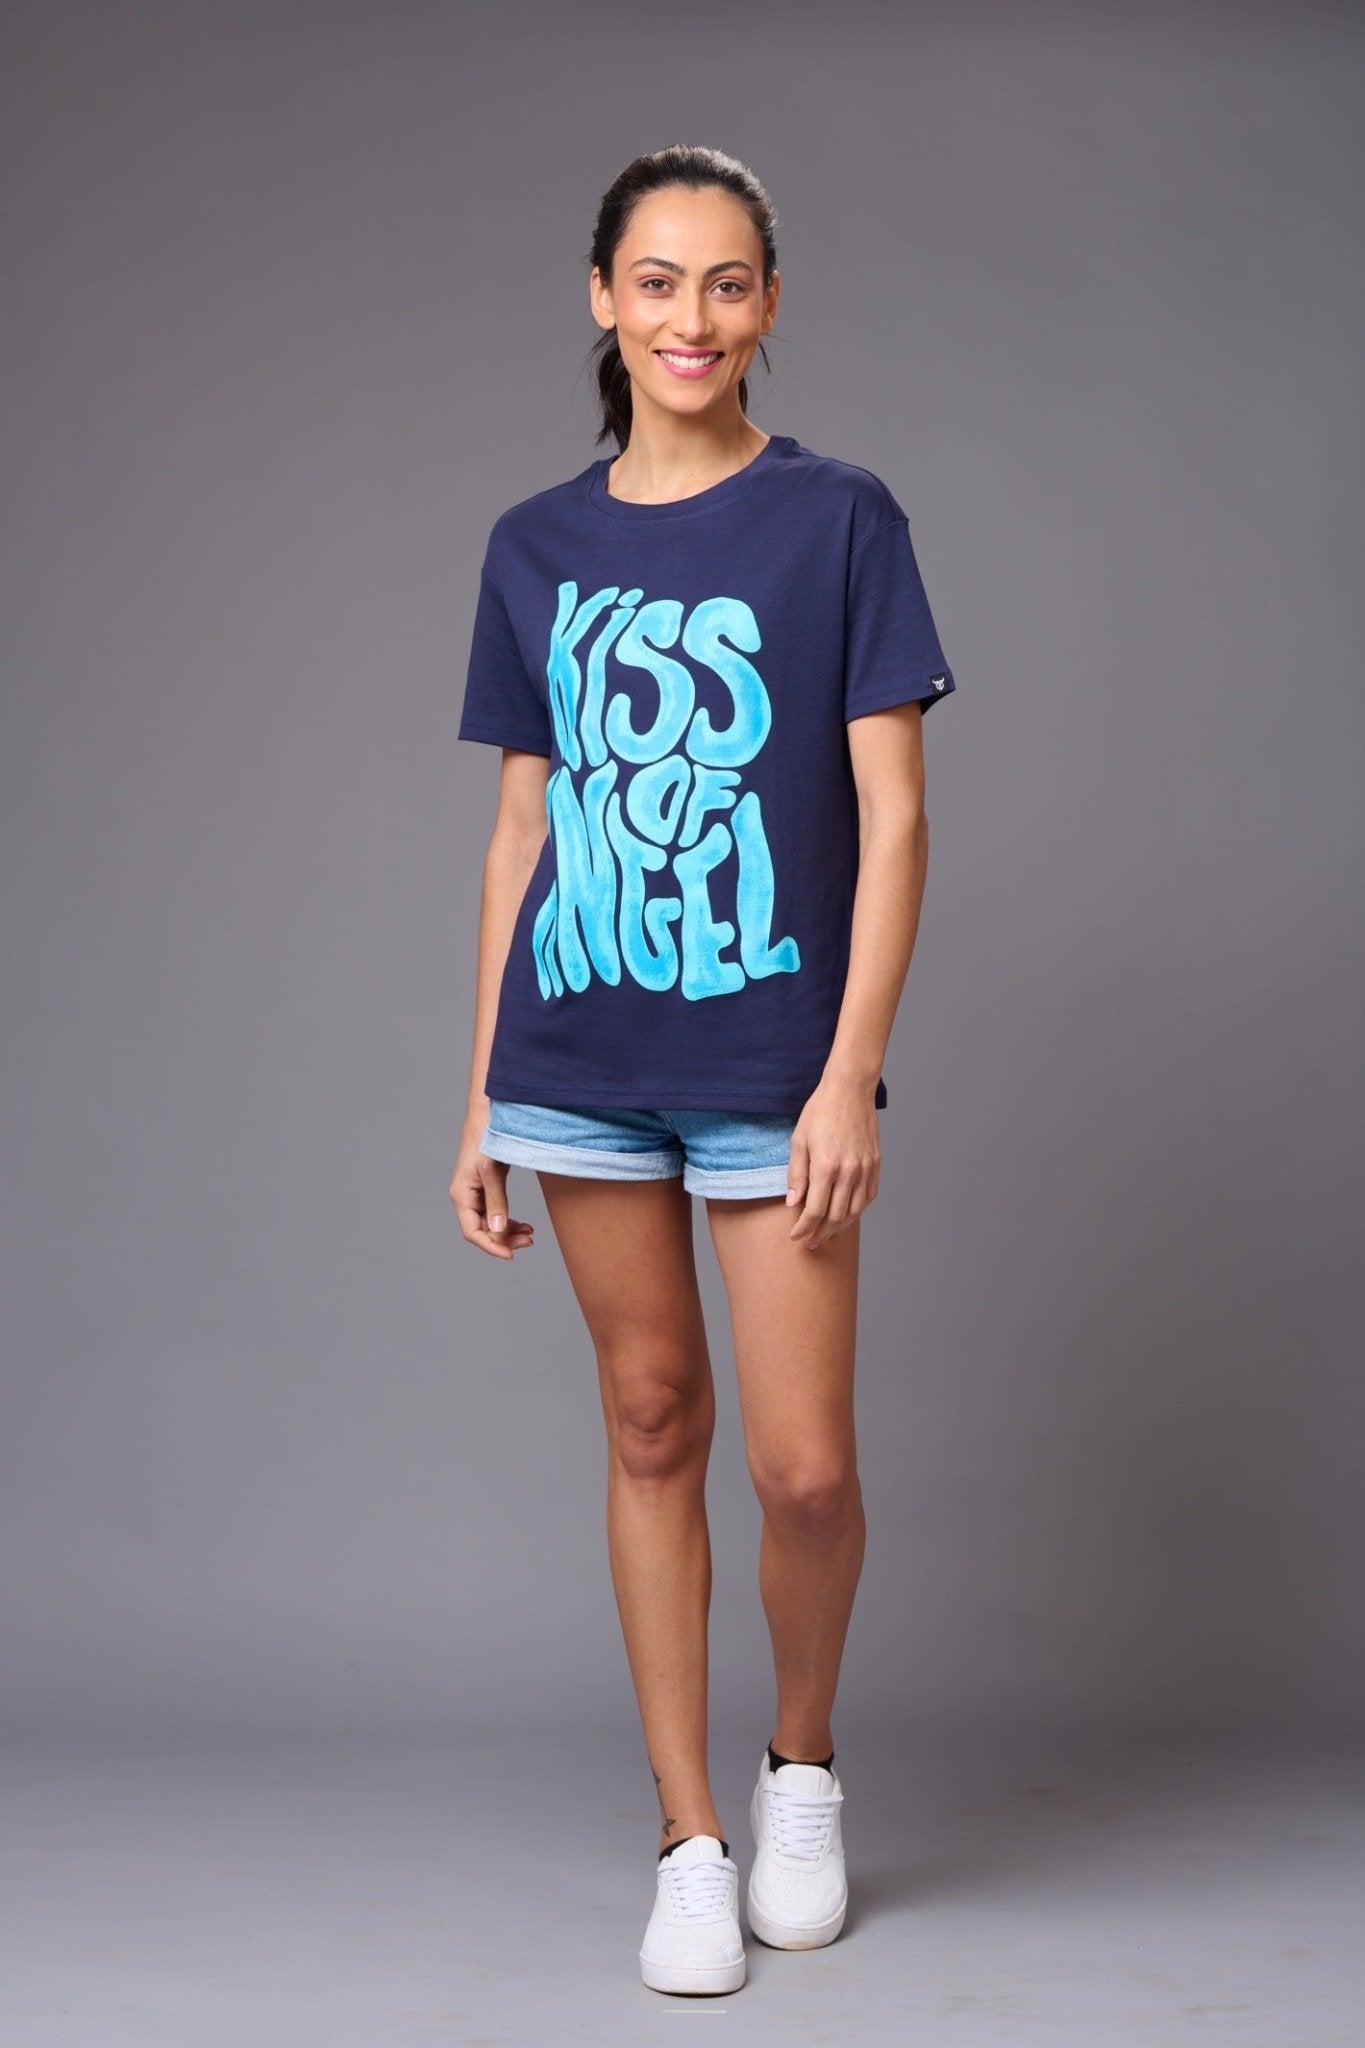 Kiss of Angel Printed Blue Oversized T-Shirt for Women - Go Devil